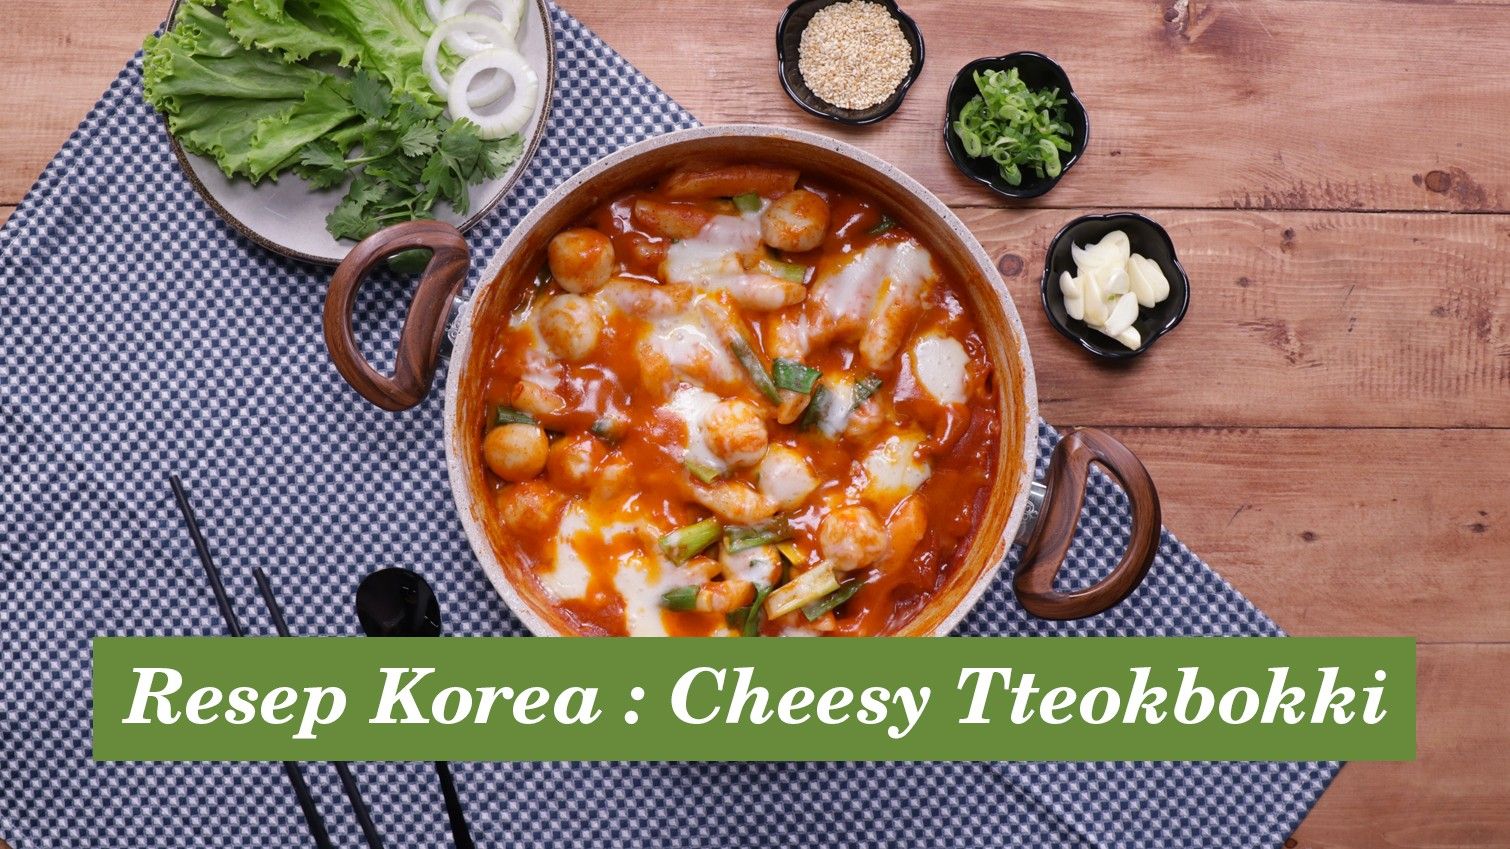 Resep Cheesy Tteokbokki, Camilan Korea Super Lezat!